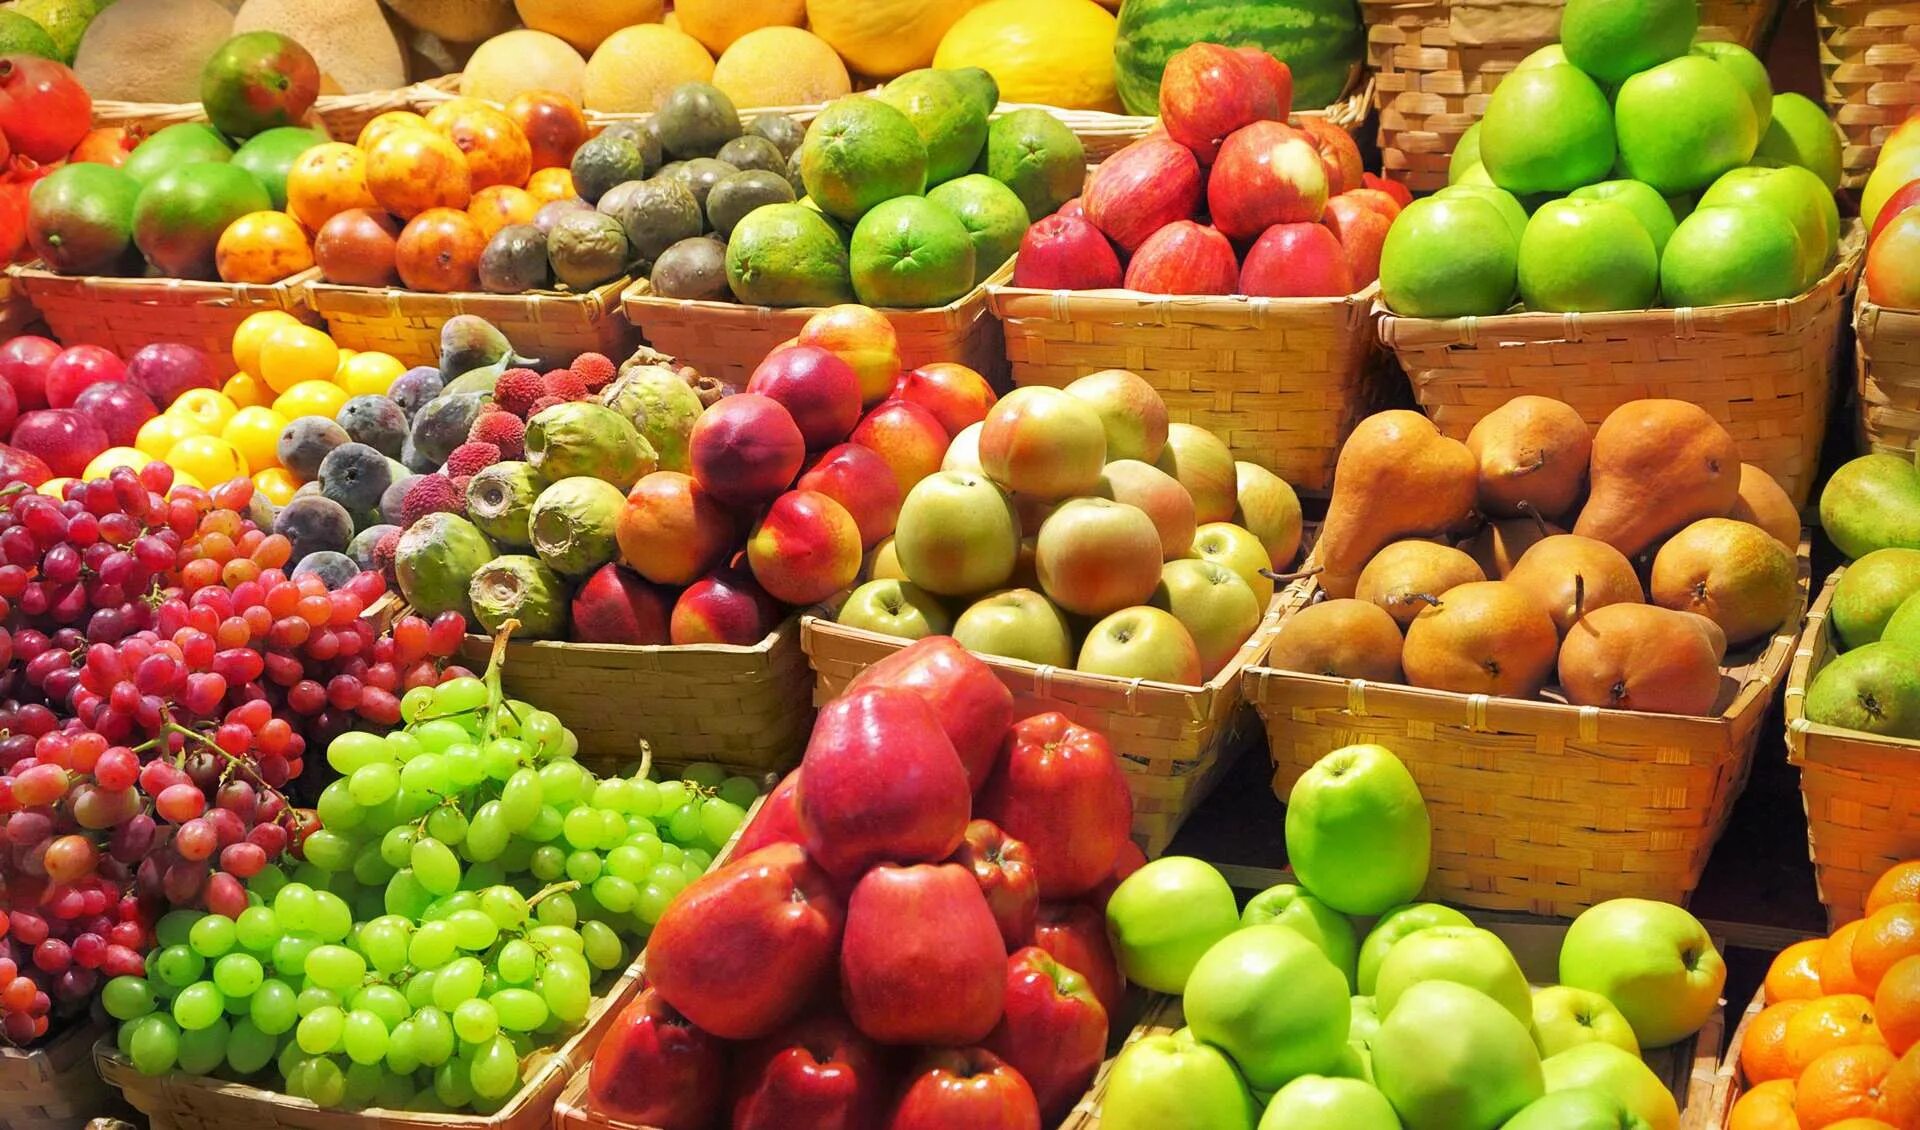 Фруктовая продукция. Овощи и фрукты. Прилавок с фруктами. Ассортимент фруктов и овощей. Прилавок с овощами и фруктами.